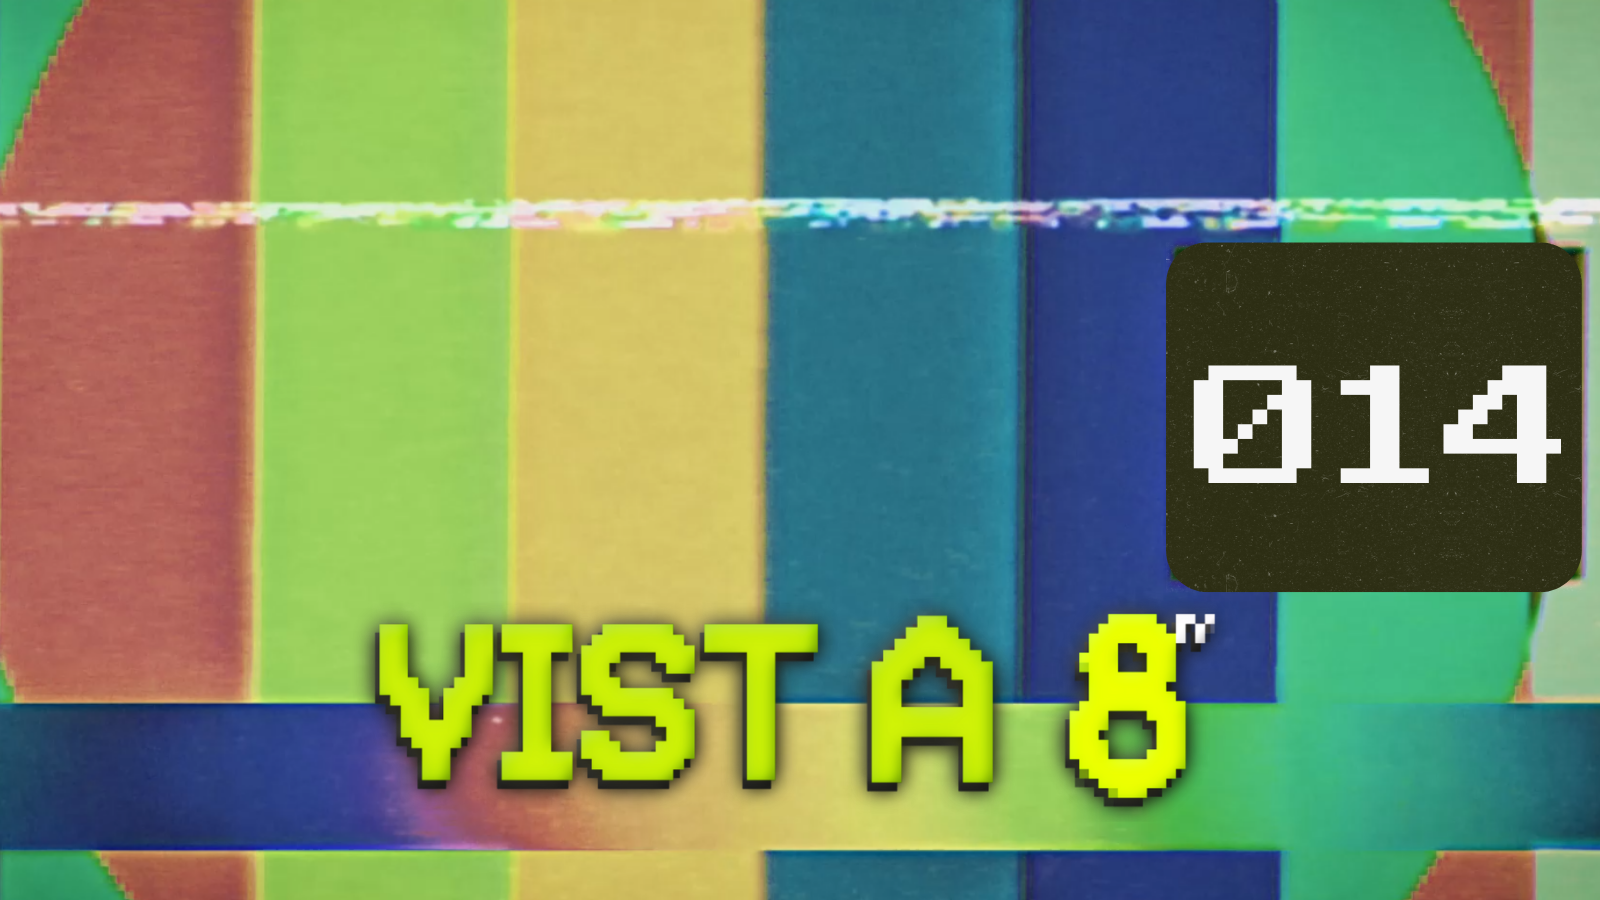 VIST A 8TV - EPISODI 14